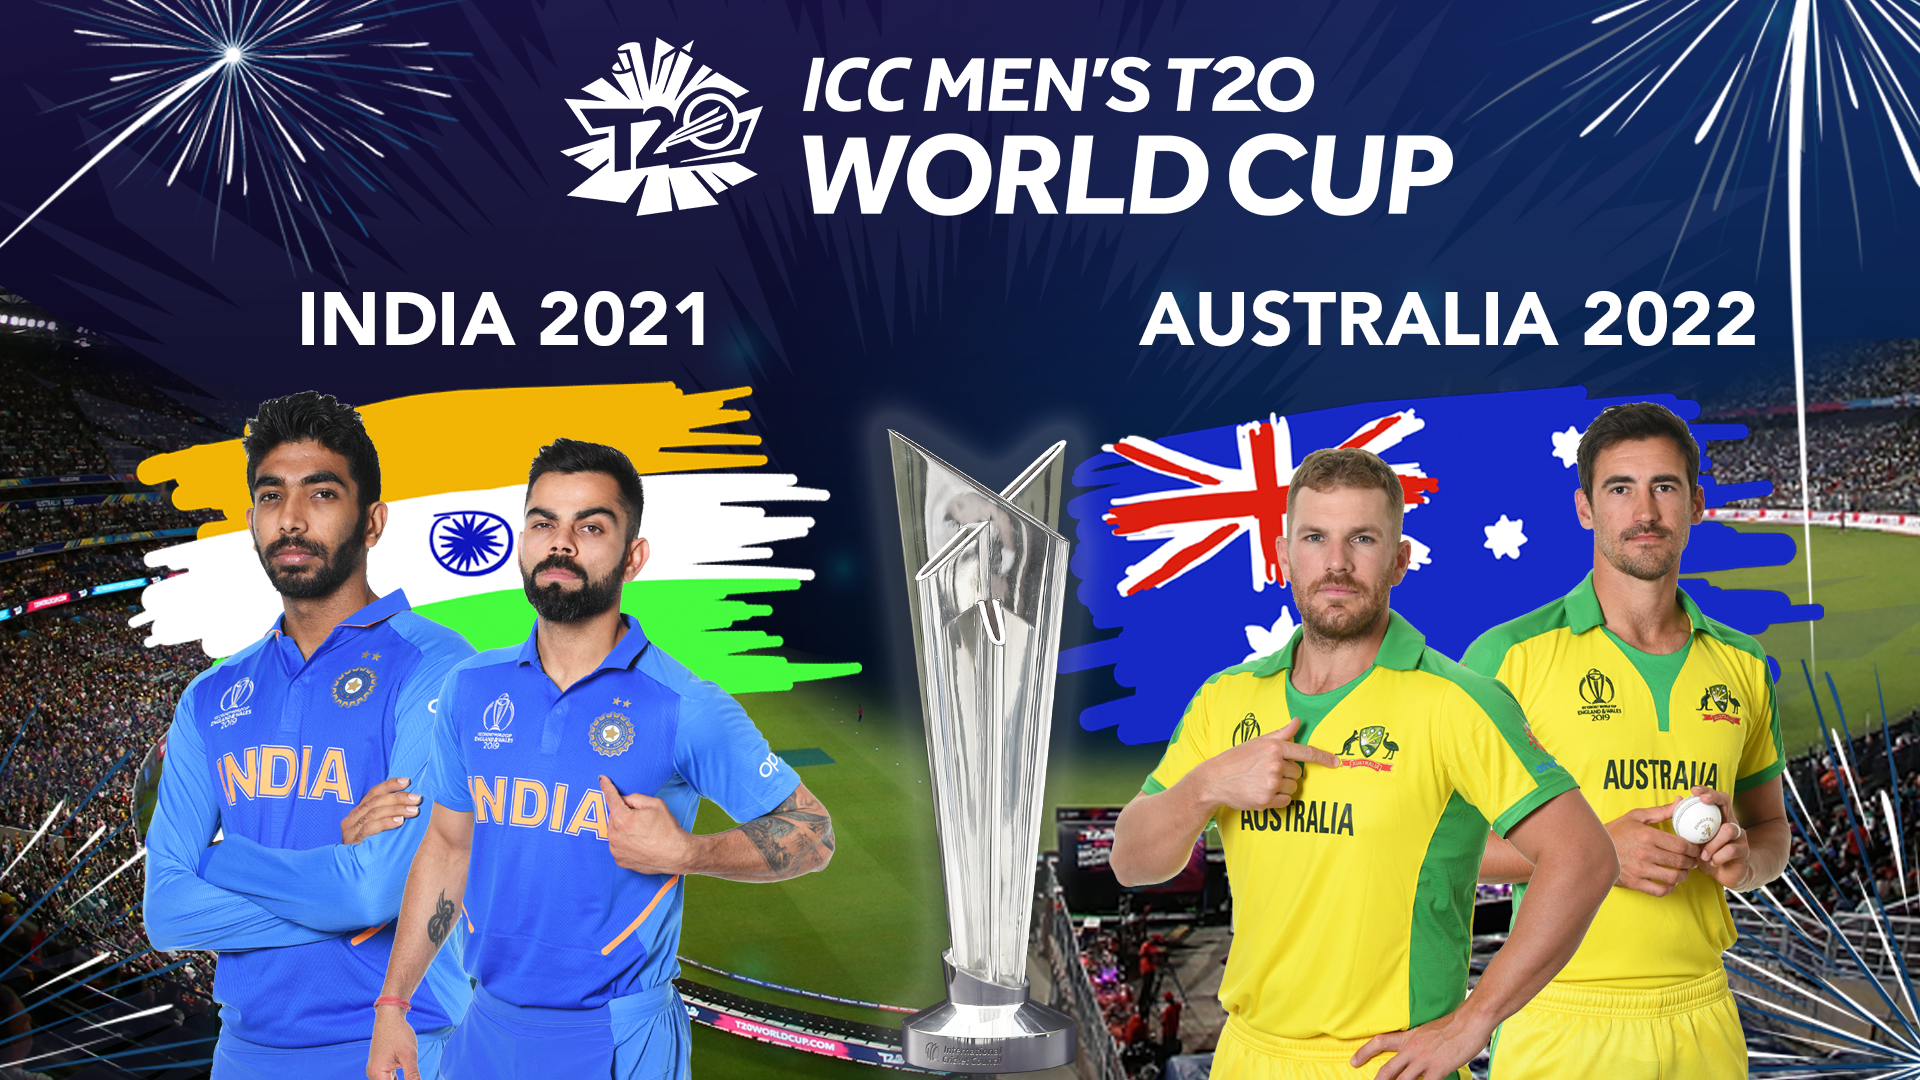 Men's T20WC 2021 in India, 2022 in Australia; Women's CWC postponed